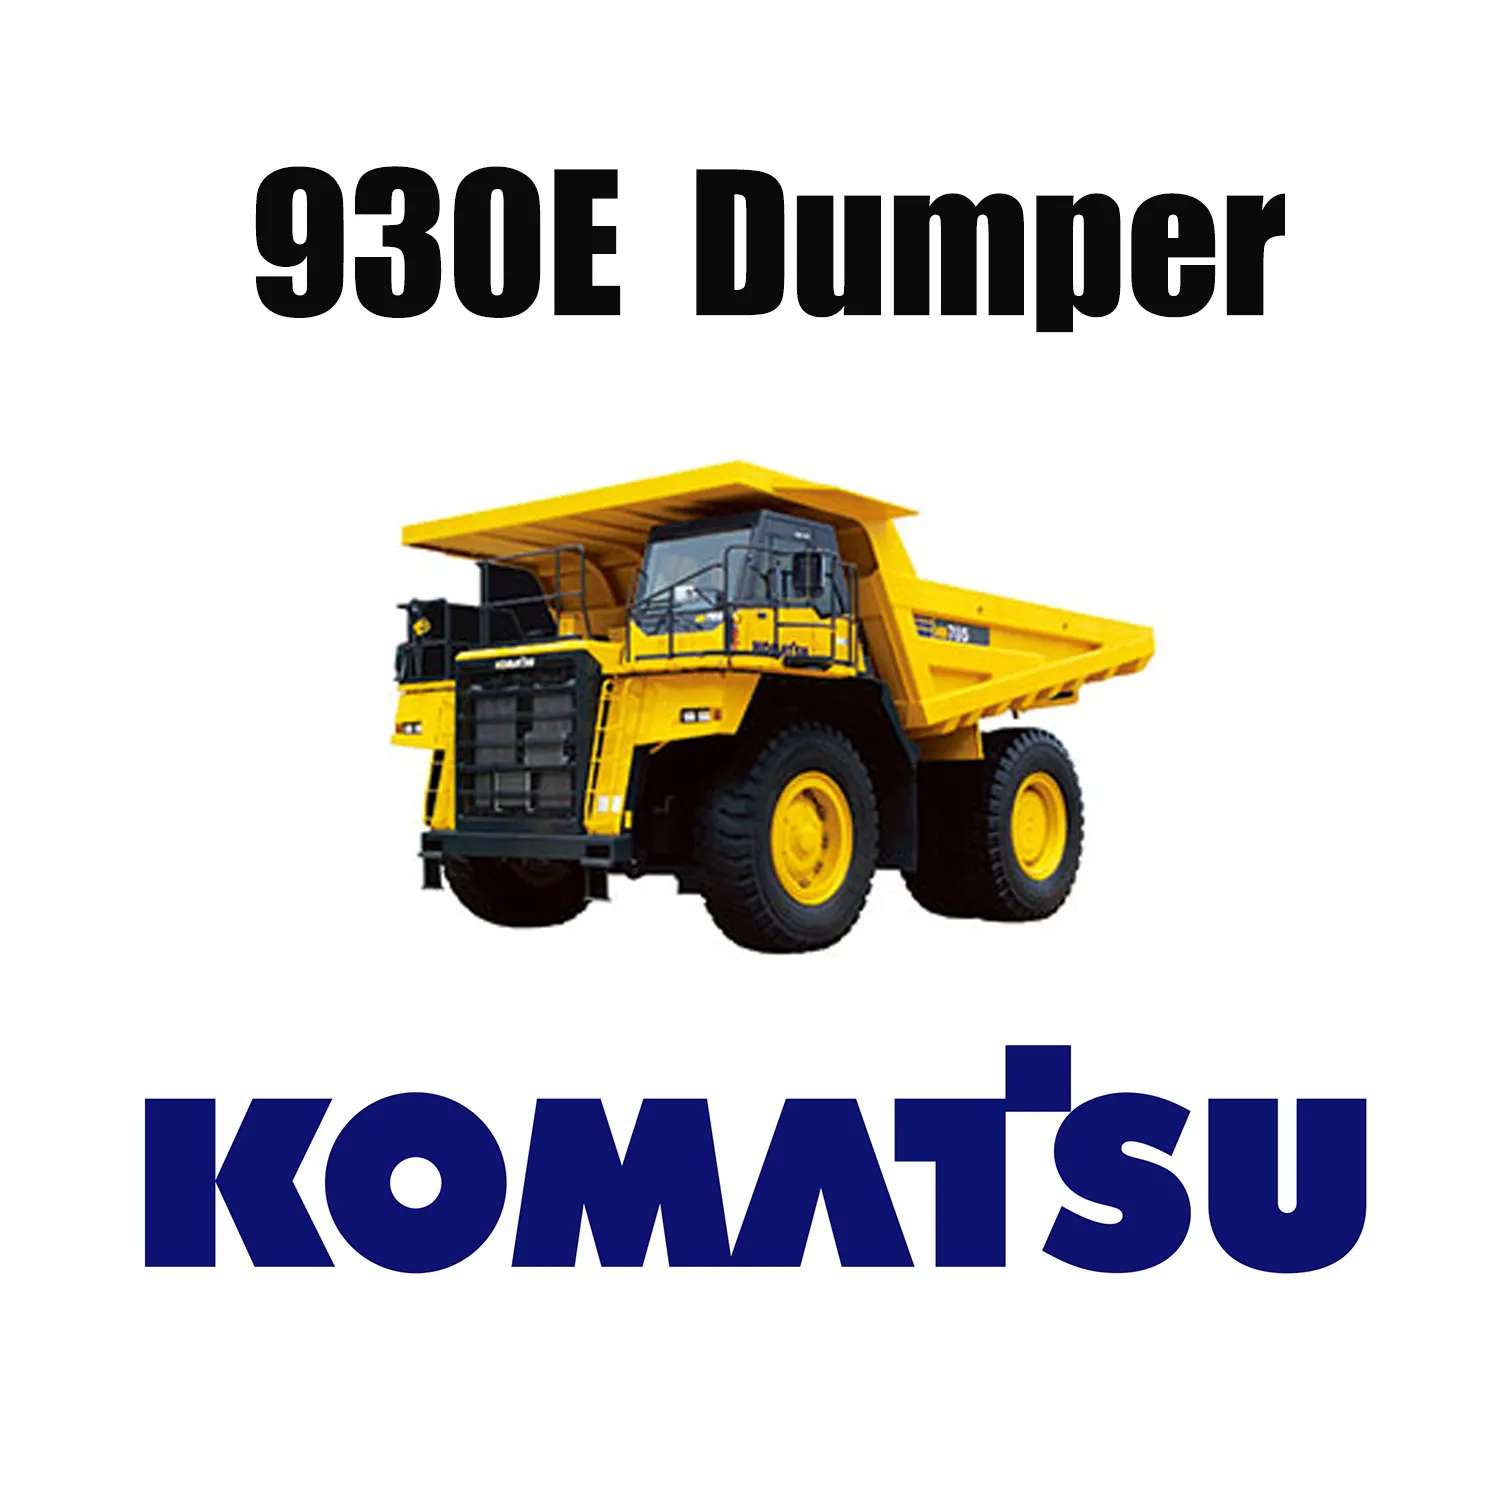 53/80R63 Off the Road Surface Mining Tires aplicados para KOMATSU 930E